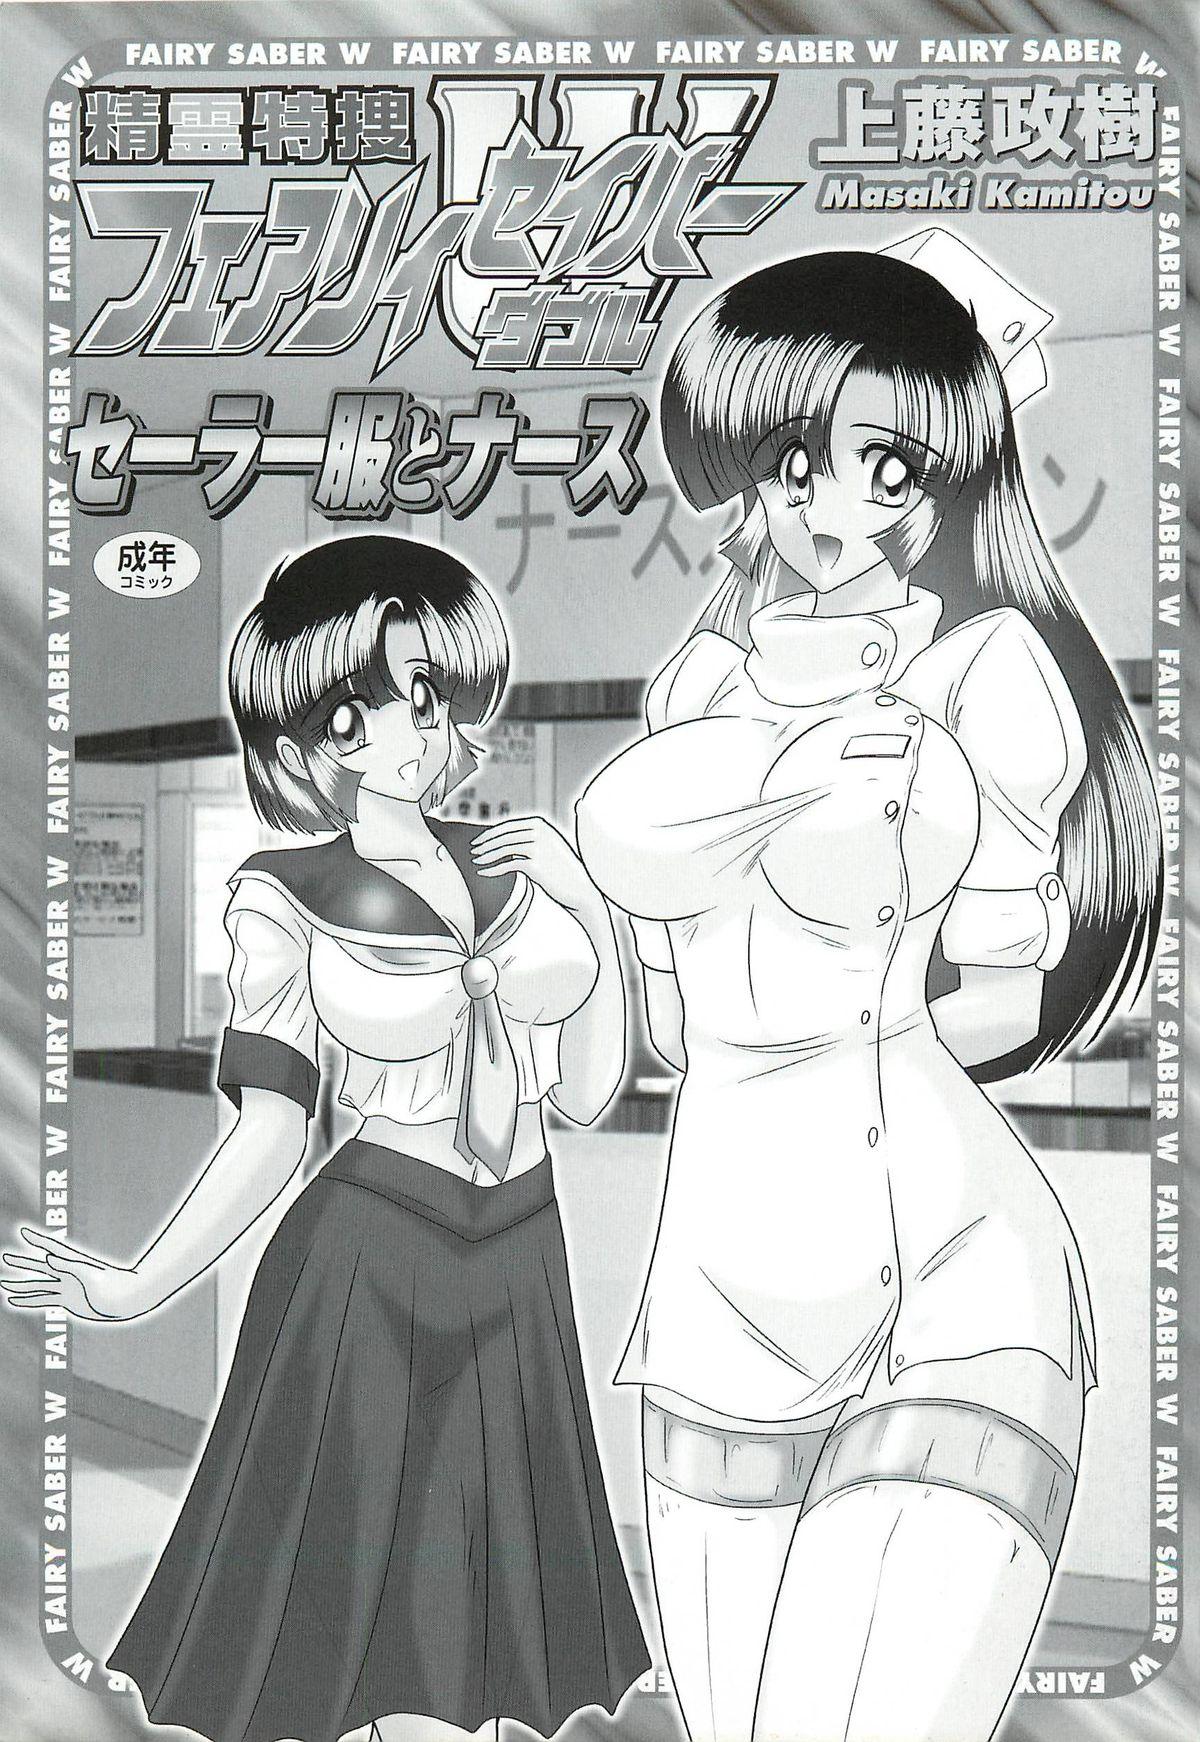 Seirei Tokusou Fairy Saber W - Sailor Fuku to Nurse 2